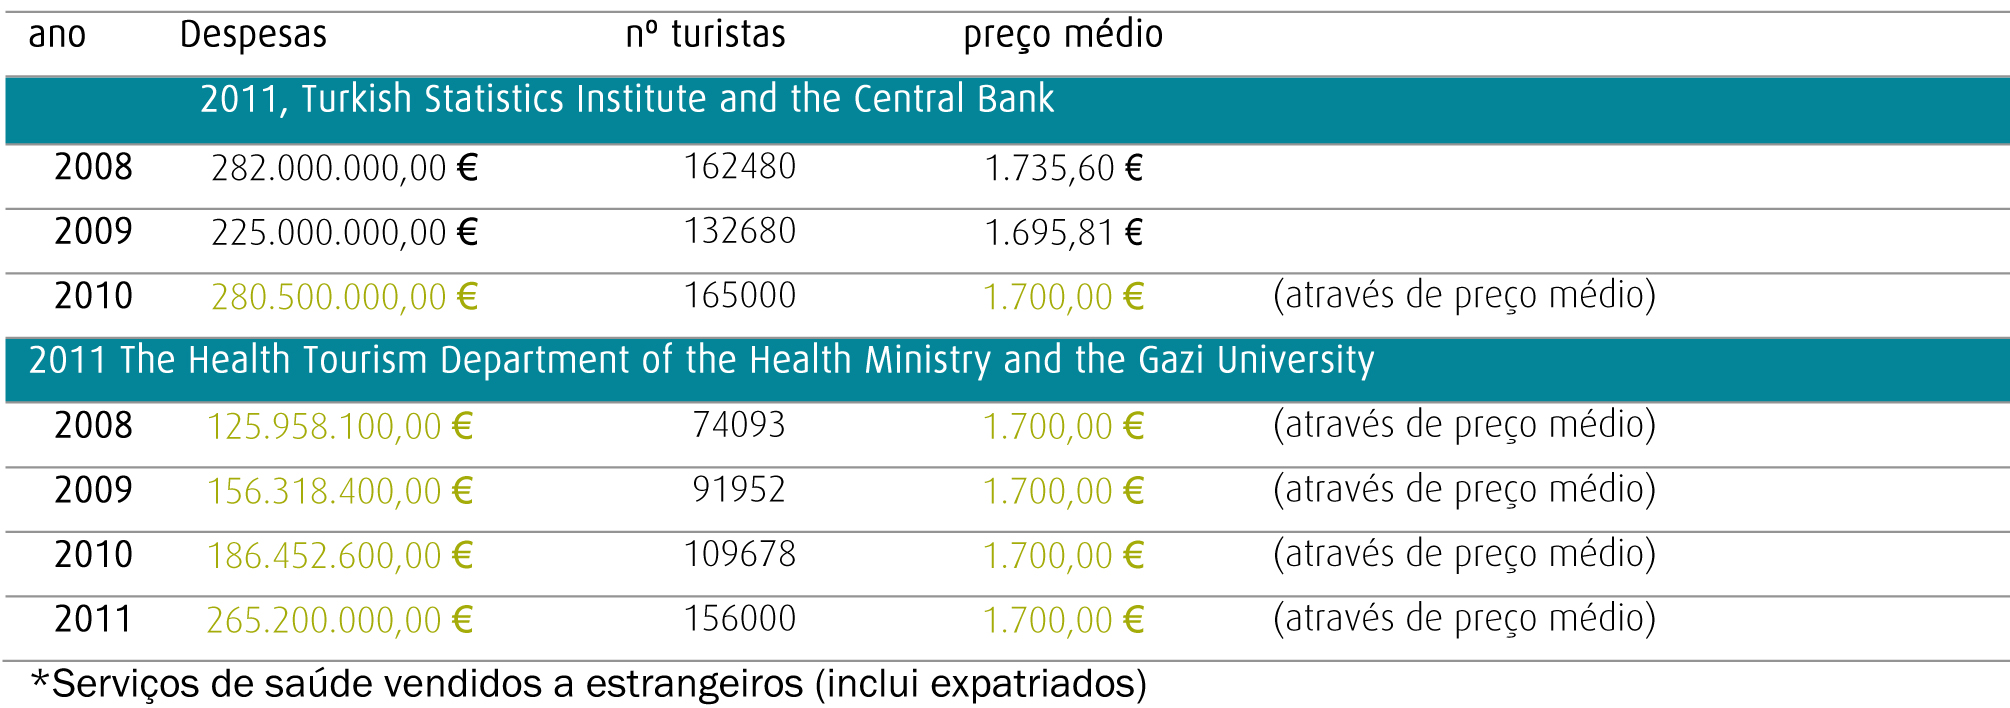 2011: Número total de serviços de saúde vendidos a estrangeiros = 154578 Conforme valores